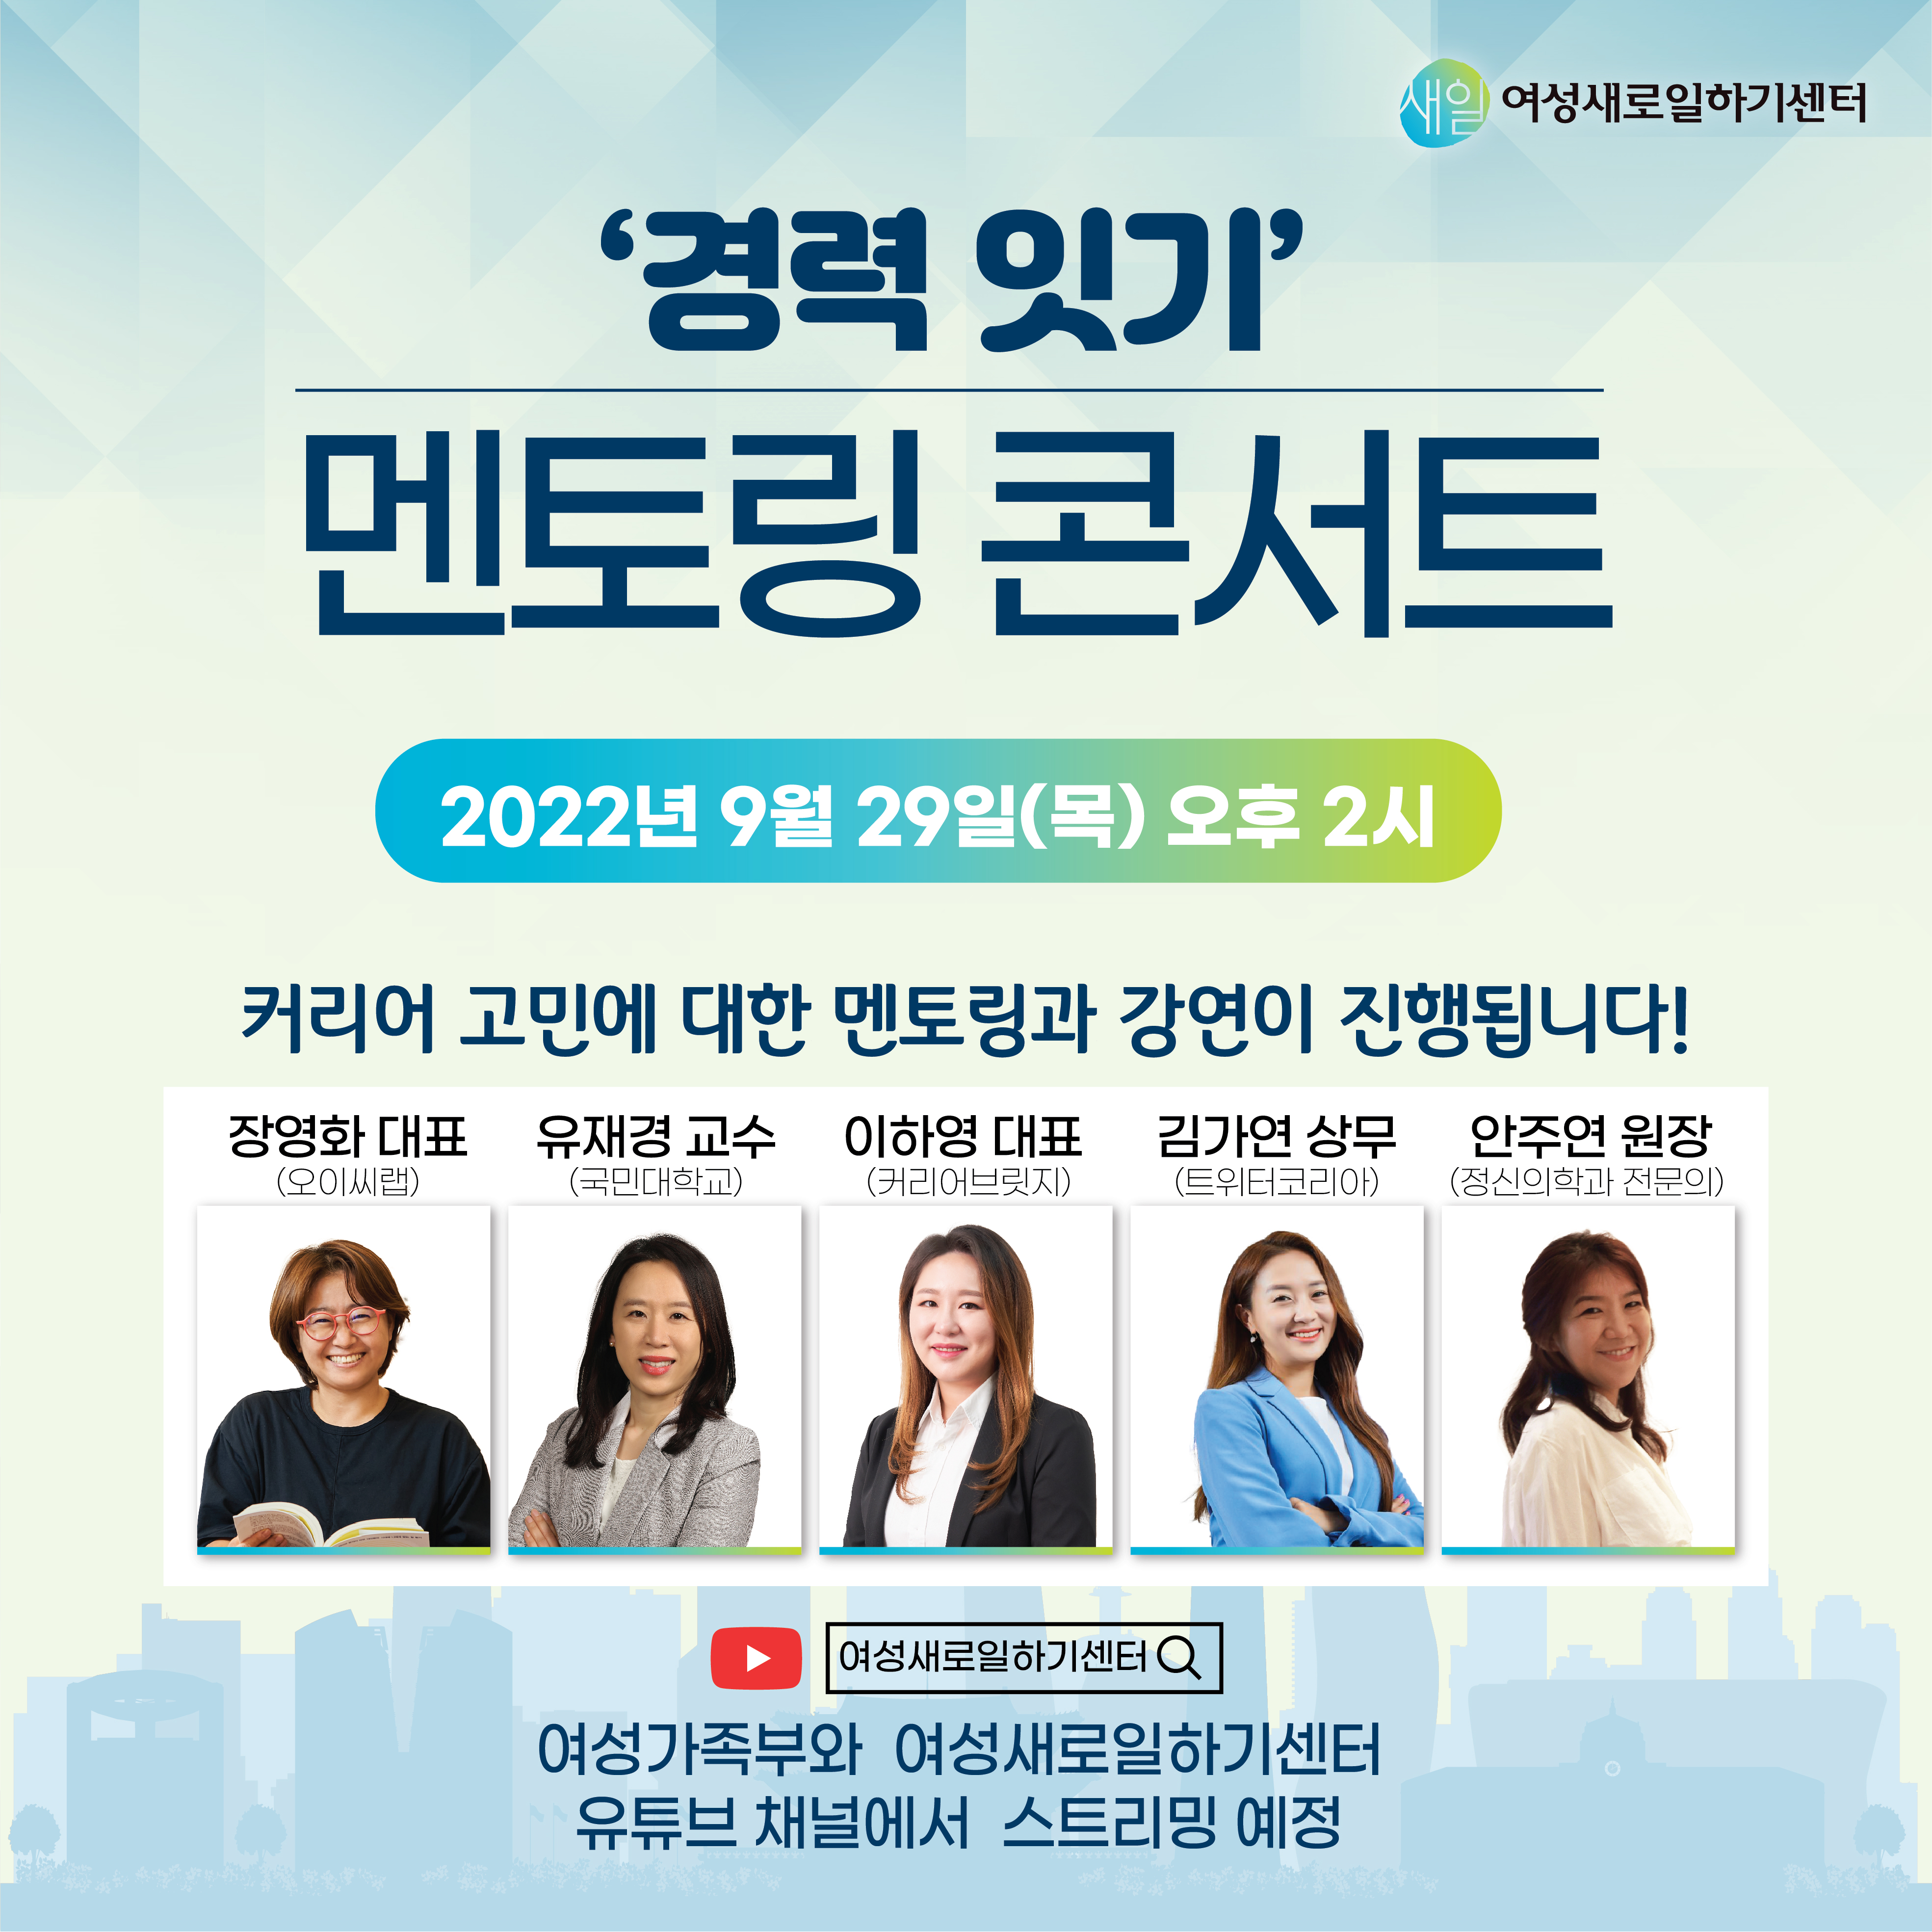 커리어 고민 해결, 9월 29일 오후 2시 경력 잇기 멘토링 콘서트 개최